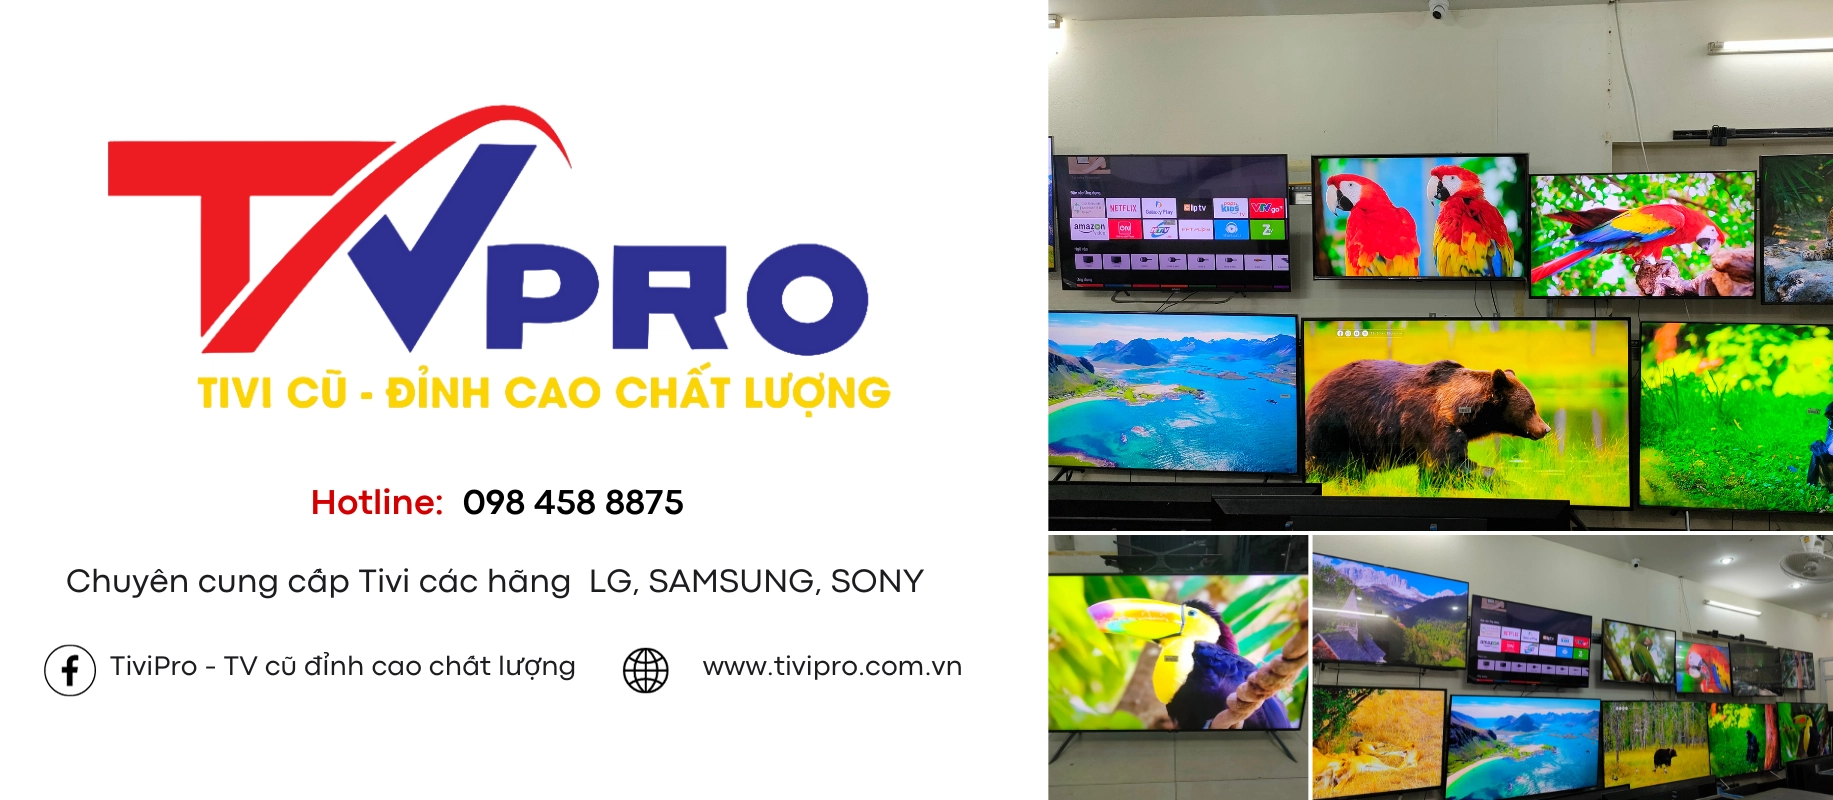 TVPro cửa hàng cung cấp các dòng tivi cũ chính hãng tại Hà Nội